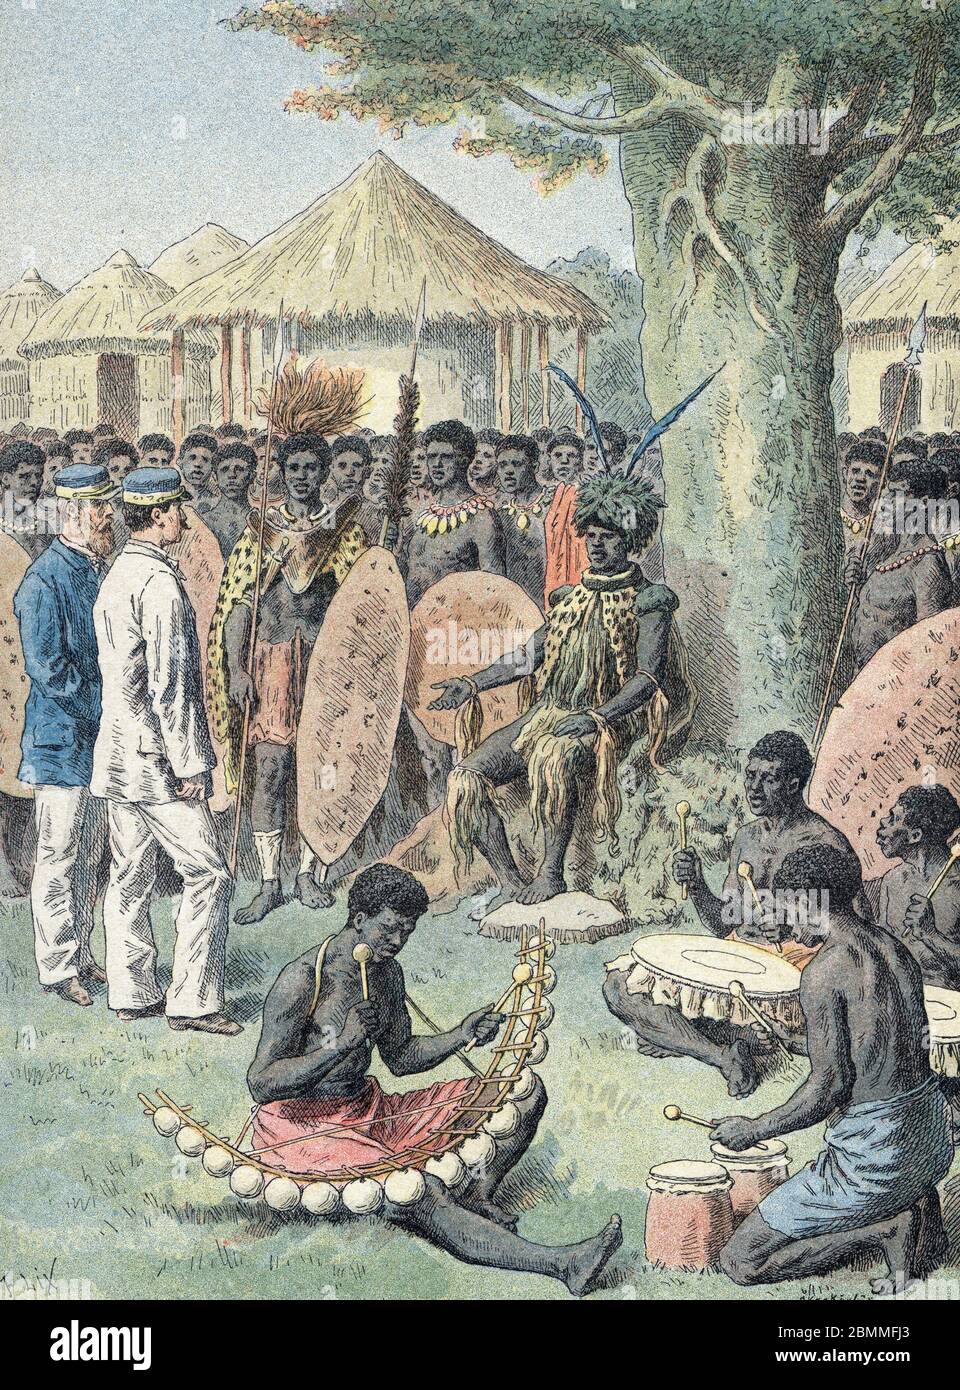 'Deux officiers francais recus dans un village d'Afrique noir, rencontre le chef de la tribu (roitelet), des musiciens jouent des instruments traditio Stock Photo